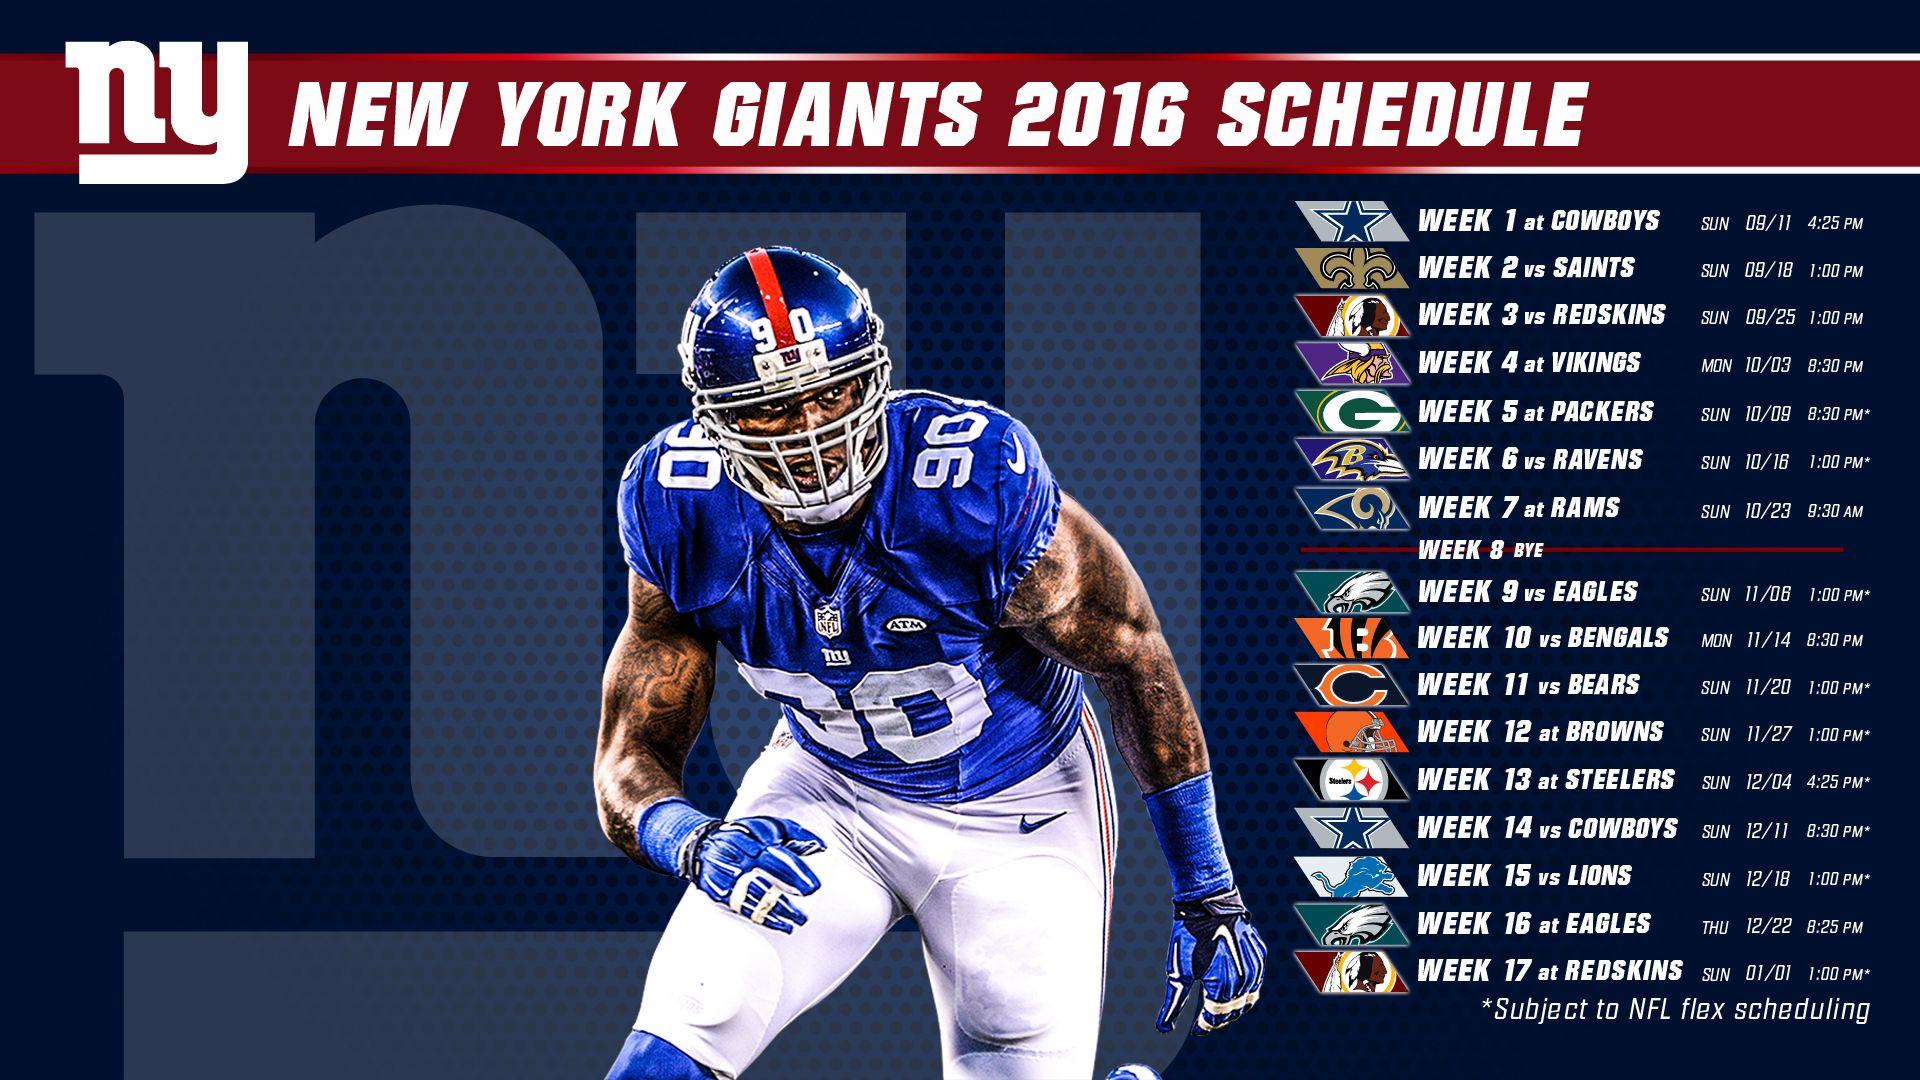 Download the Giants 2016 schedule desktop wallpaper